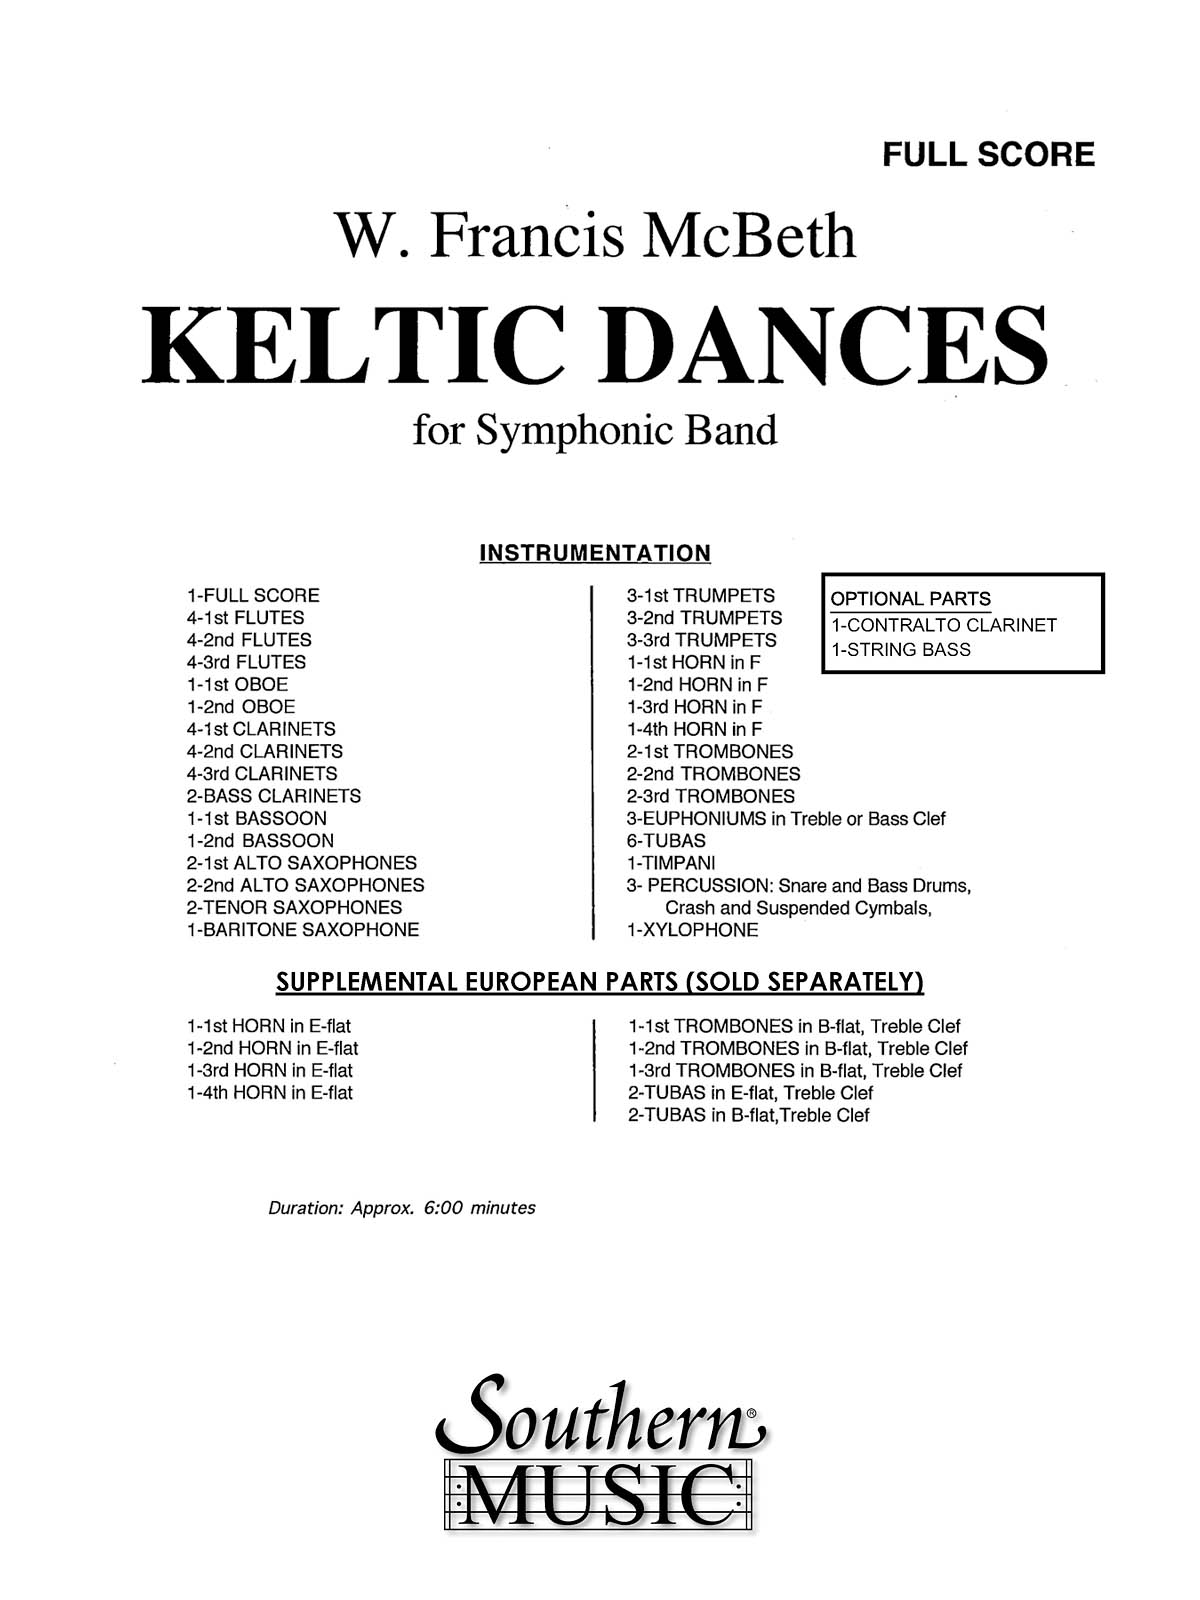 Keltic (Celtic) Dances